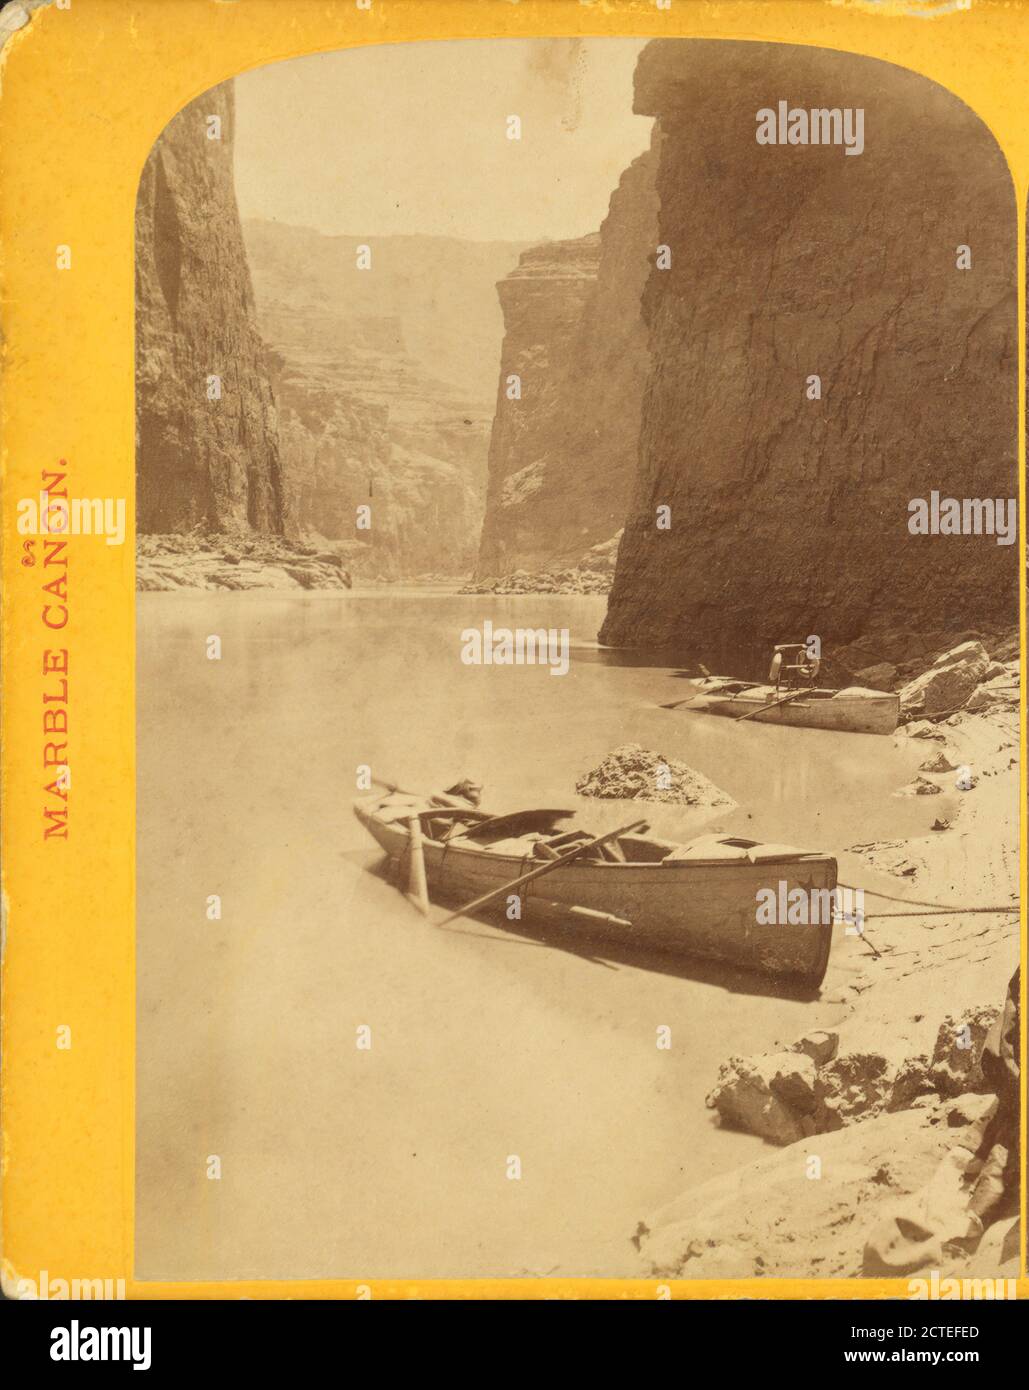 Marble Cañon, le cañon à midi. Barque vide sur les rives de la rivière., Powell, John Wesley (1834-1902), 1871, Colorado River (Colop-Mexico), États-Unis Banque D'Images